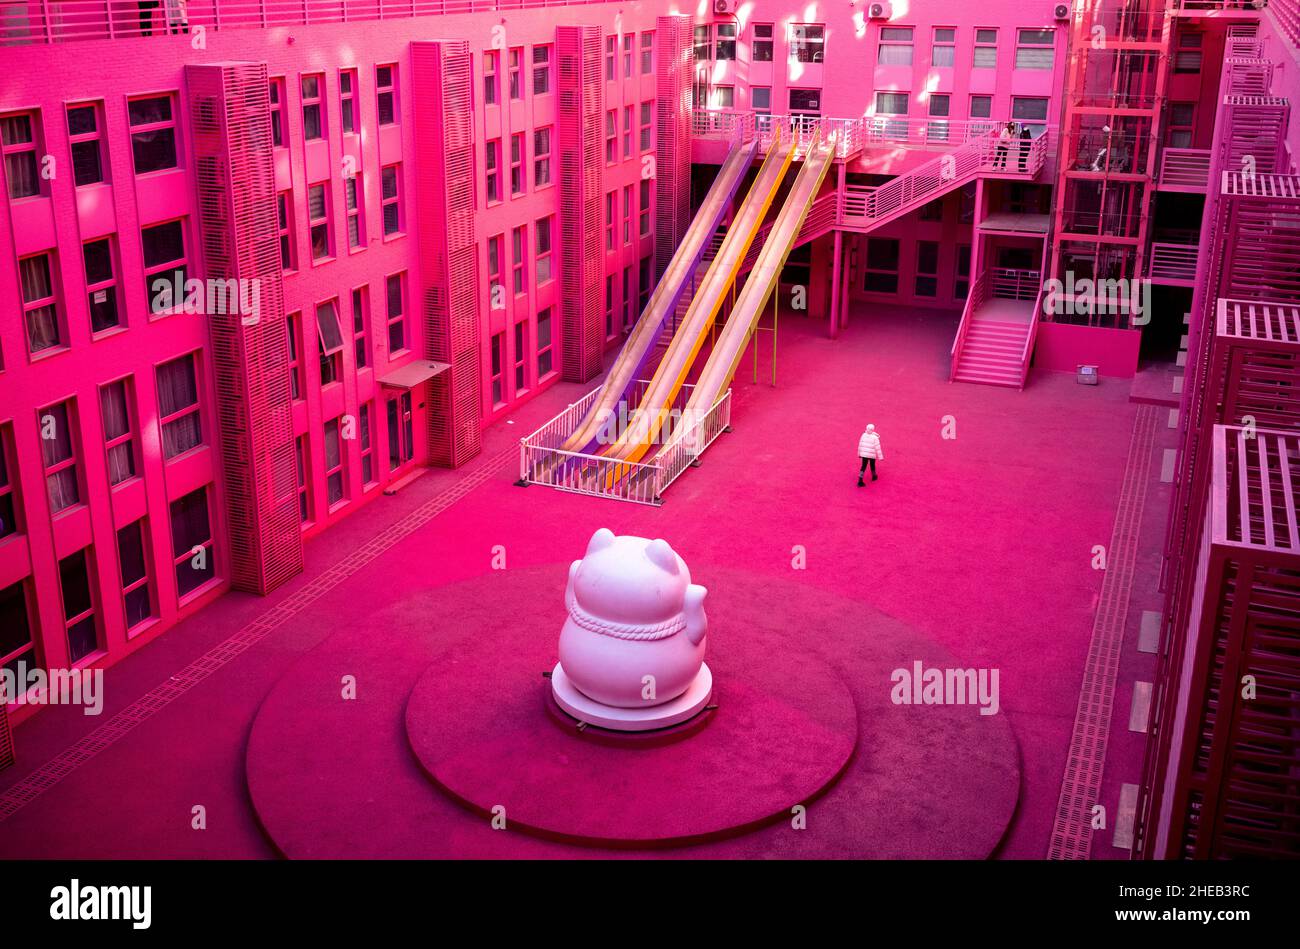 Peking, China. 10th Januar 2022. 5 Cats Mall in Peking, China am 10/01/2022 wurde der Veranstaltungsort ganz rosa gestrichen, eine Attraktion für chinesische Influencer. Von Wiktor Dabkowski Quelle: dpa/Alamy Live News Stockfoto